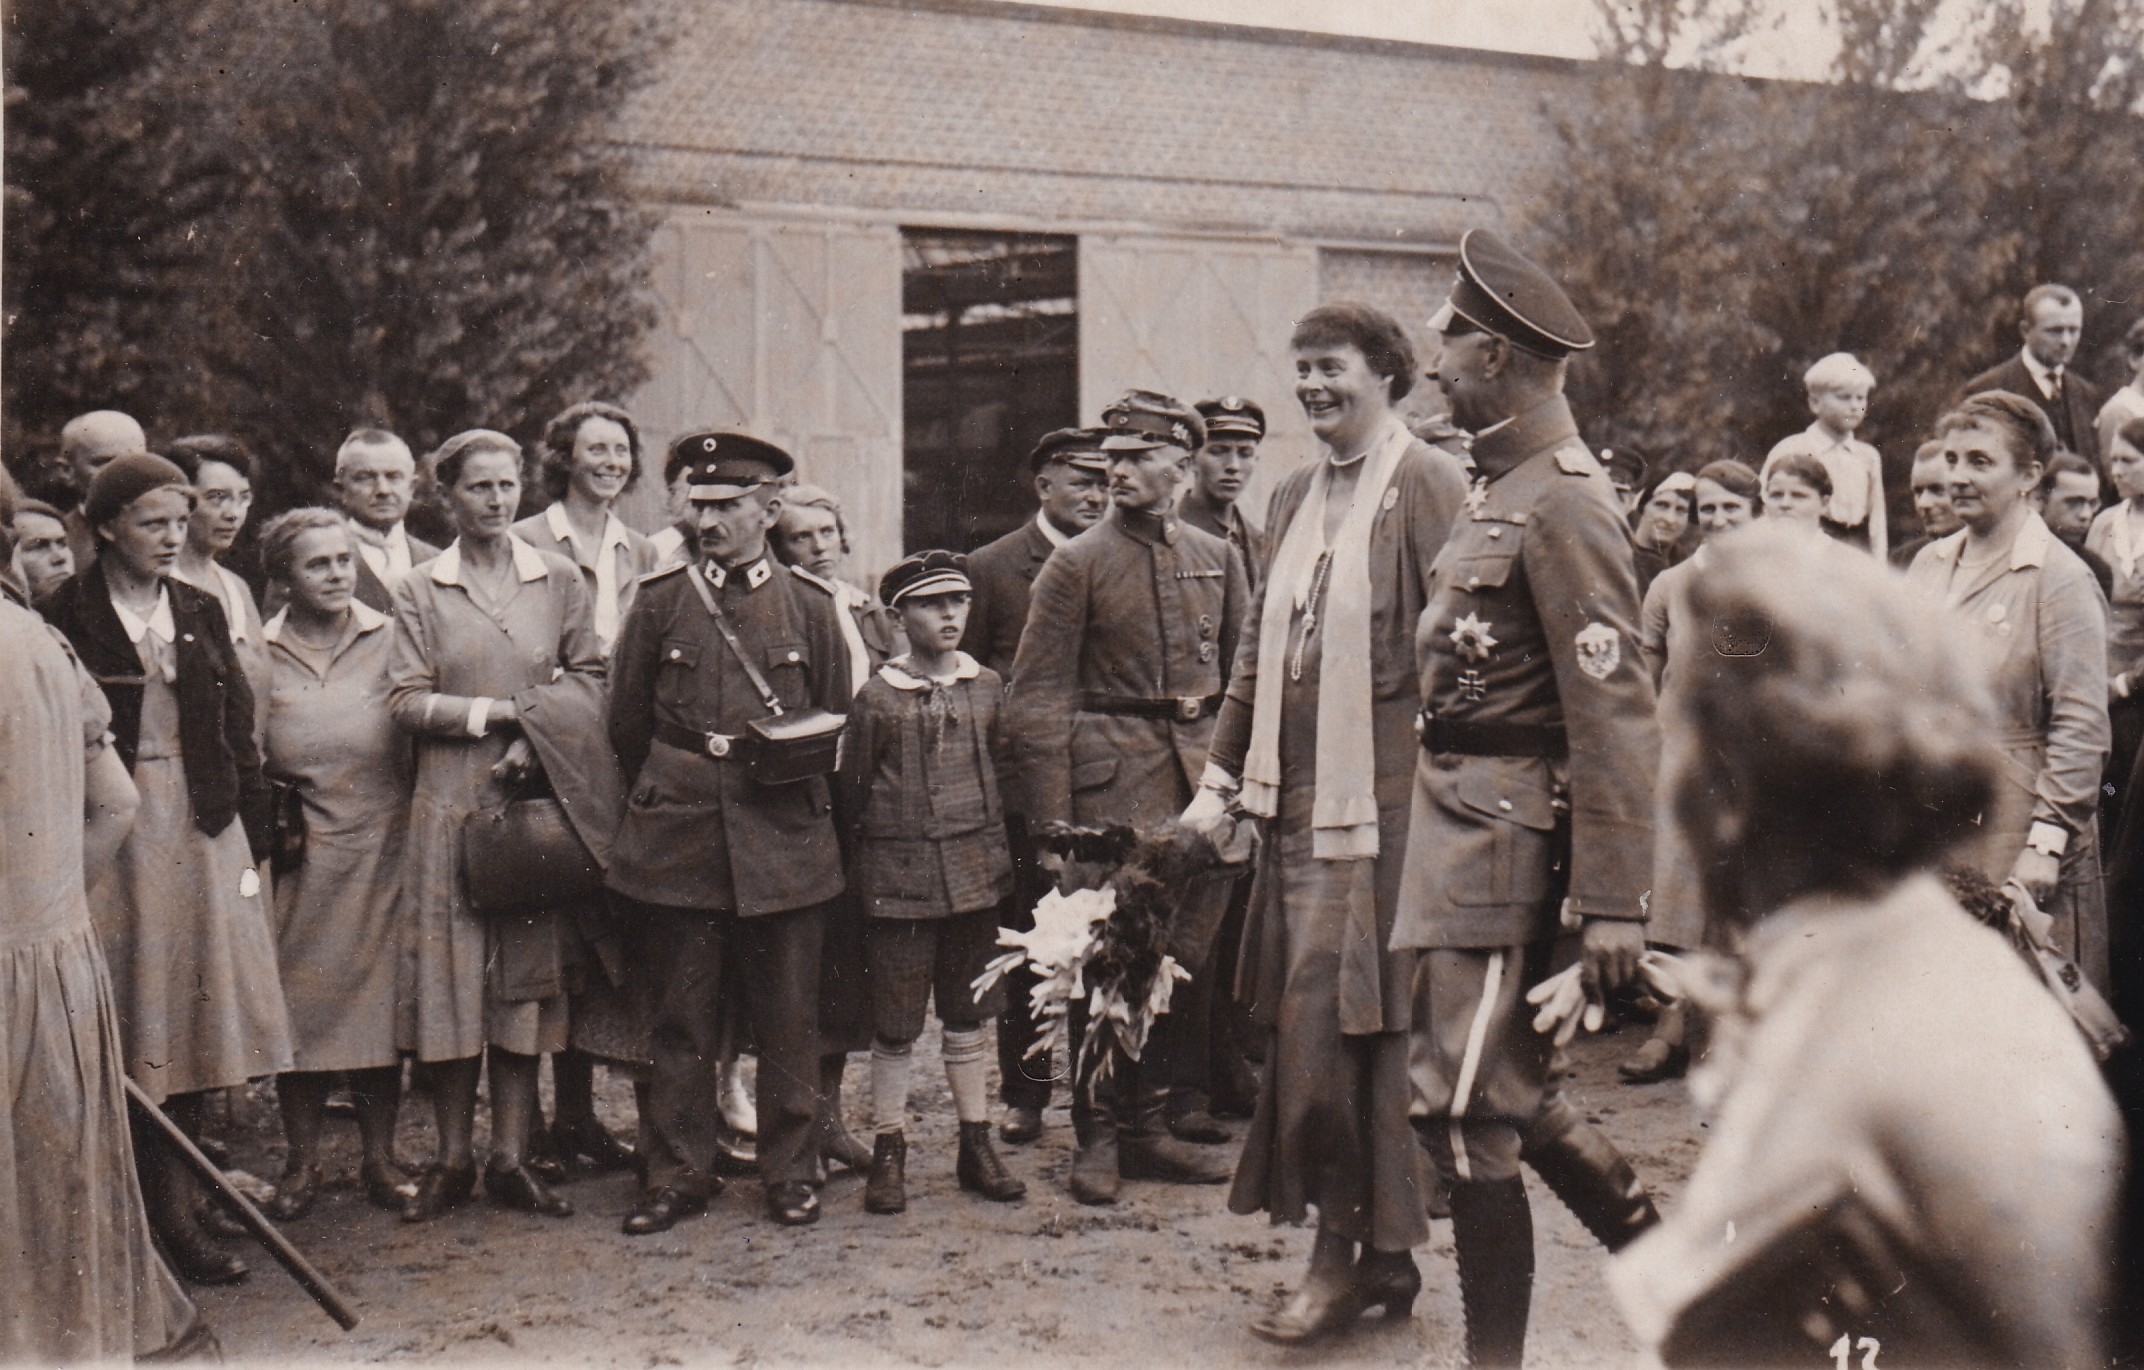 Bildpostkarte mit einem Foto des ehemaligen Kronprinzenpaares beim "Luisentag" in Potsdam, 1932 (Schloß Wernigerode GmbH RR-F)